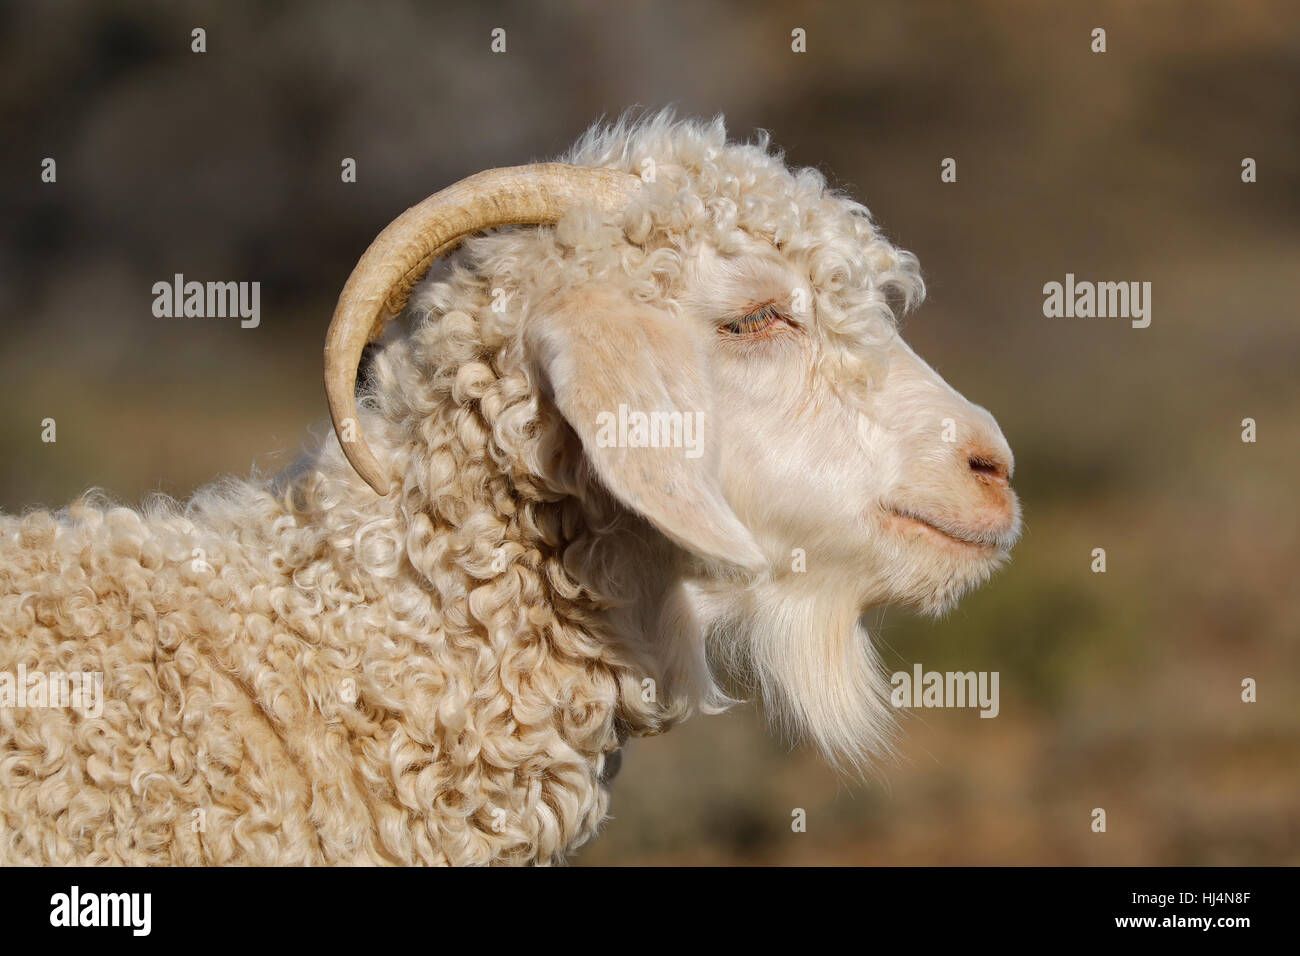 Retrato de una cabra de angora en una finca rural Foto de stock